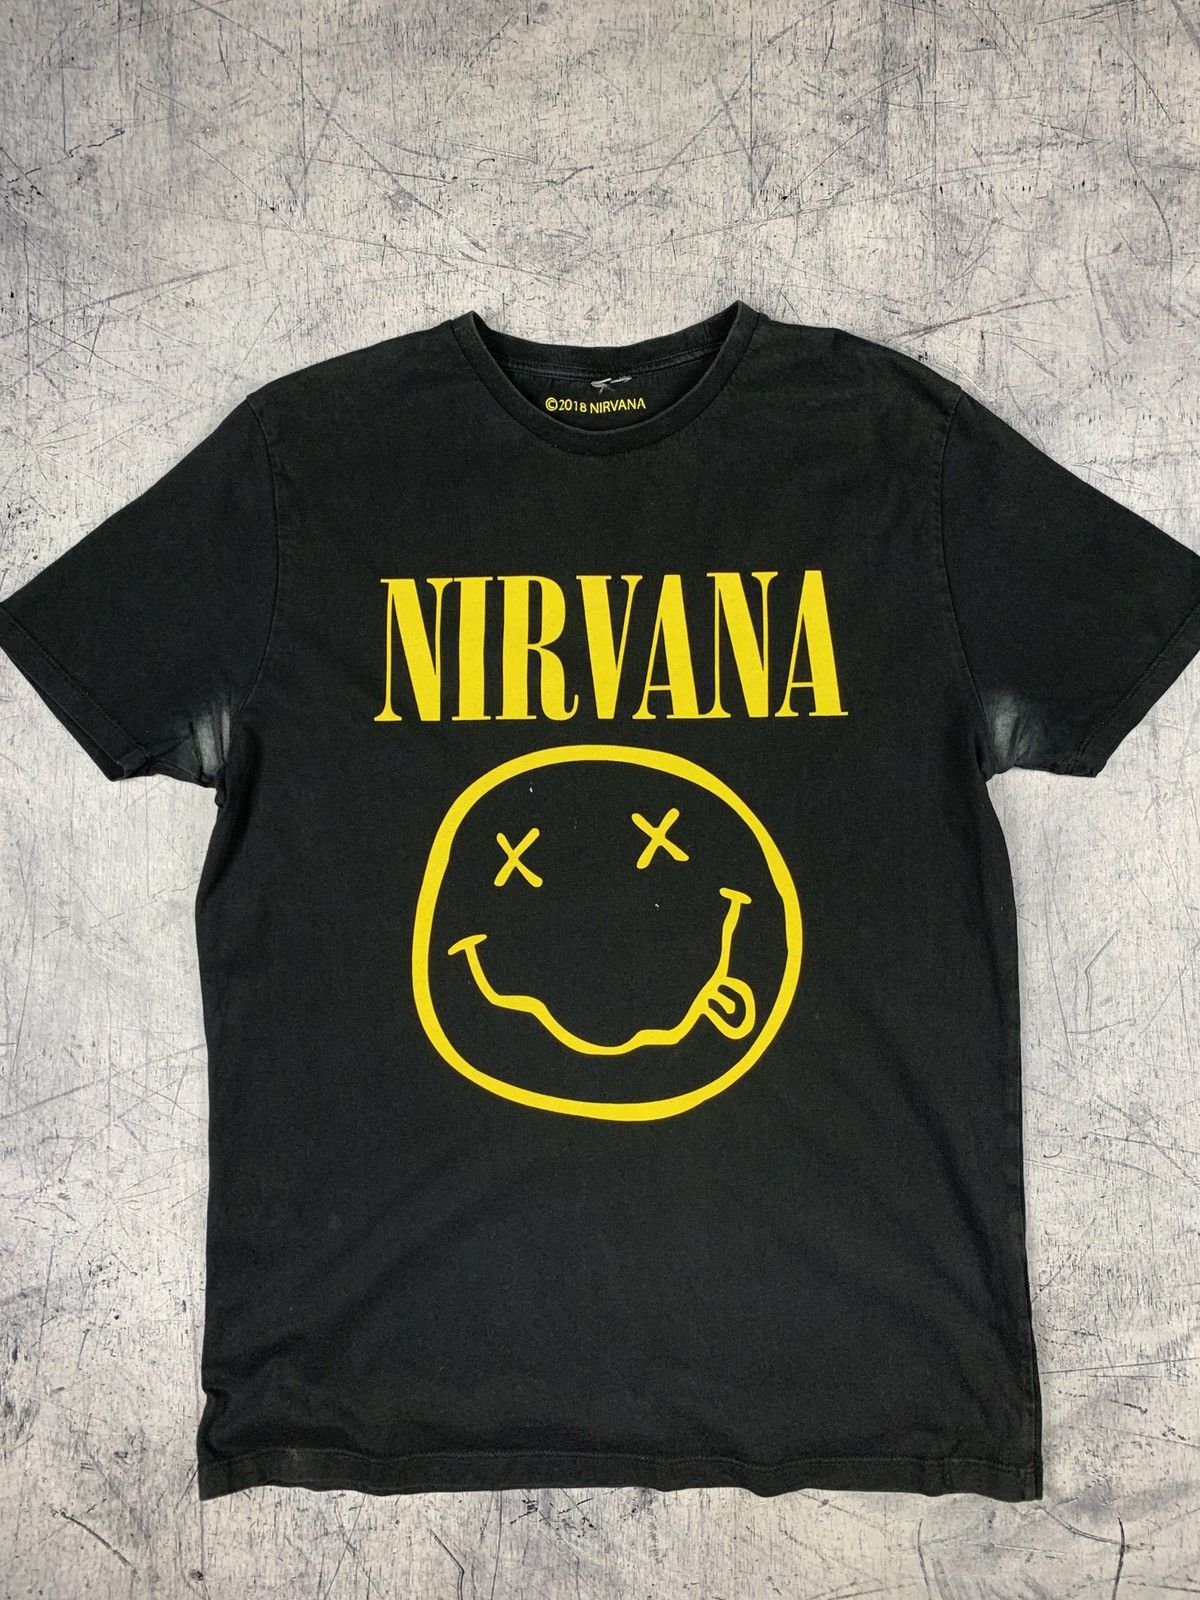 Nirvana Vintage Nirvana Smile Rock Band Tour Graphic Tee Size US M / EU 48-50 / 2 - 8 Thumbnail